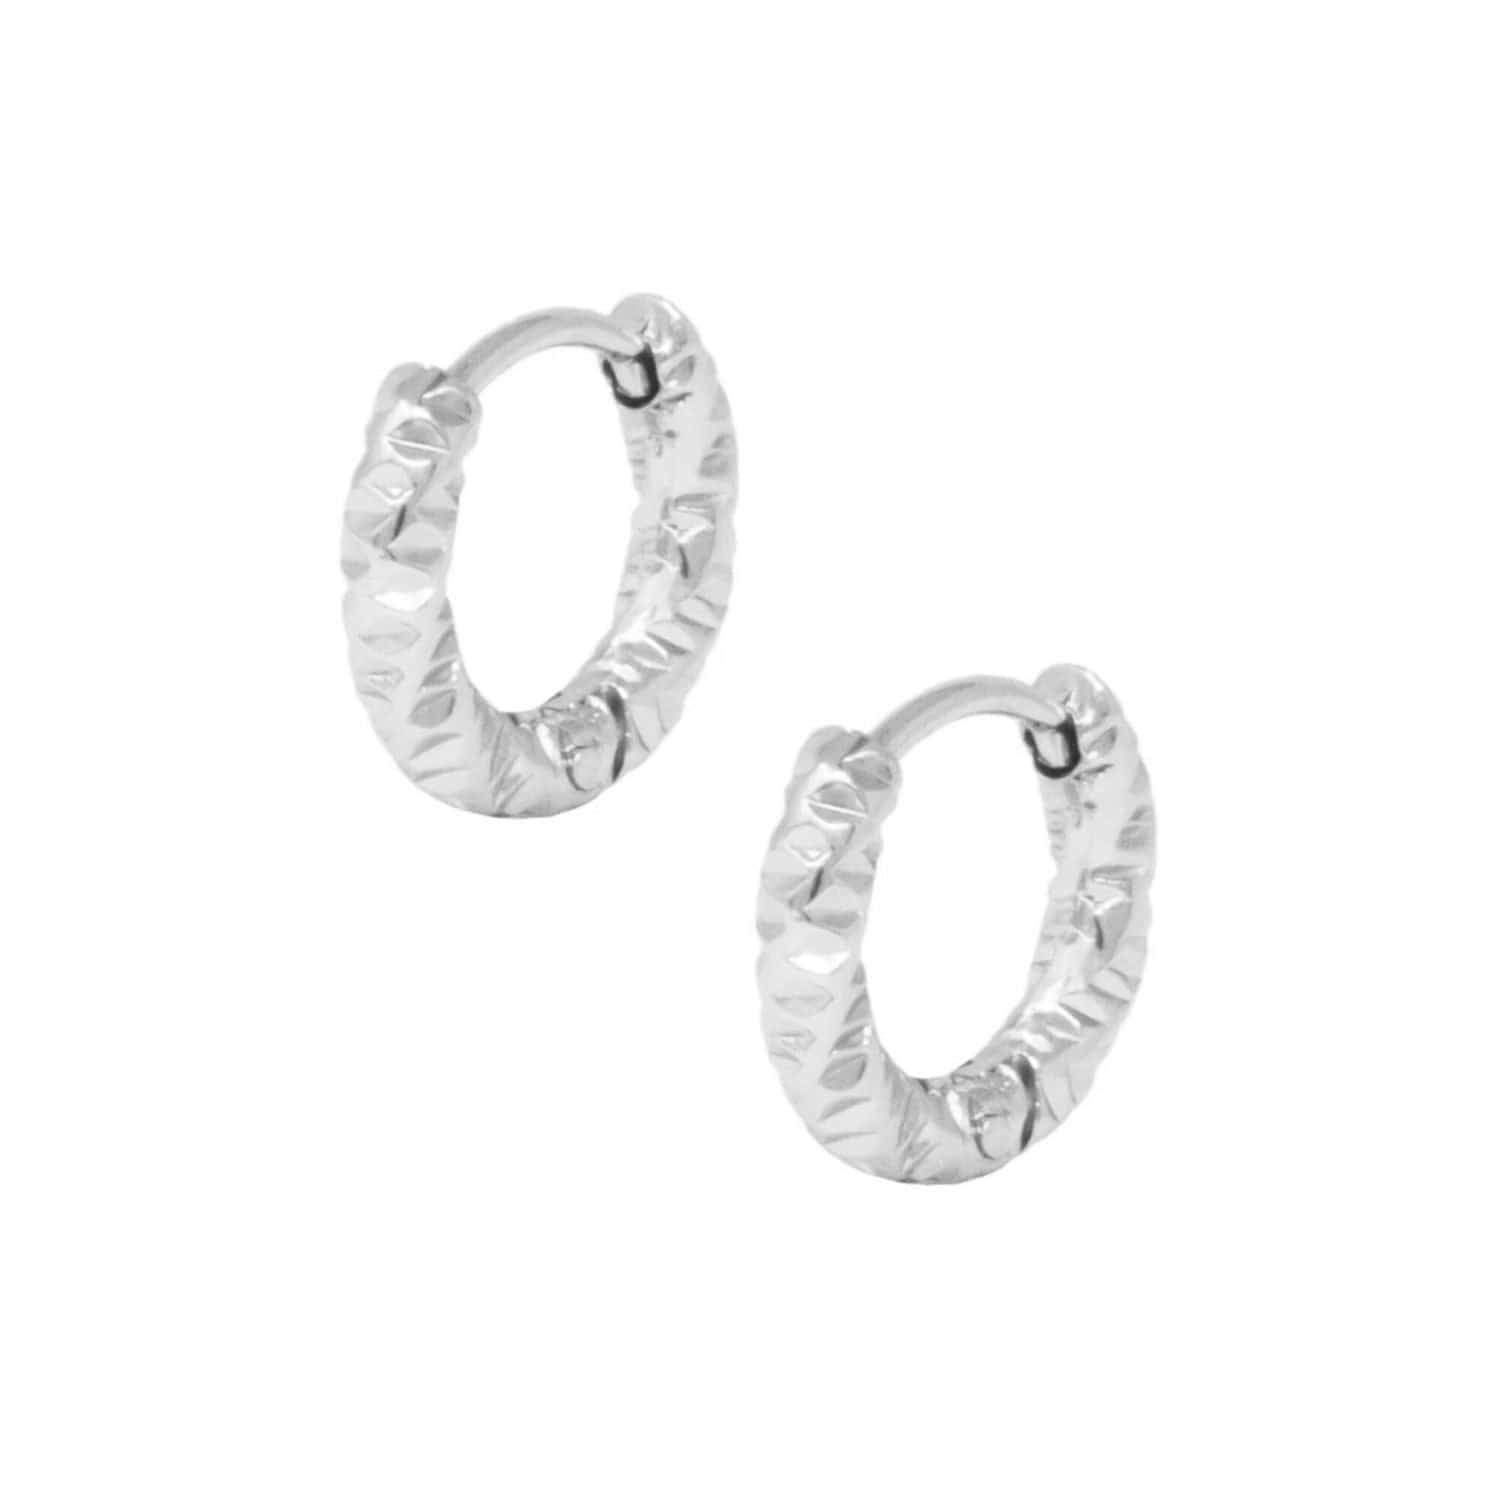 BohoMoon Stainless Steel Ripple Hoop Earrings Silver